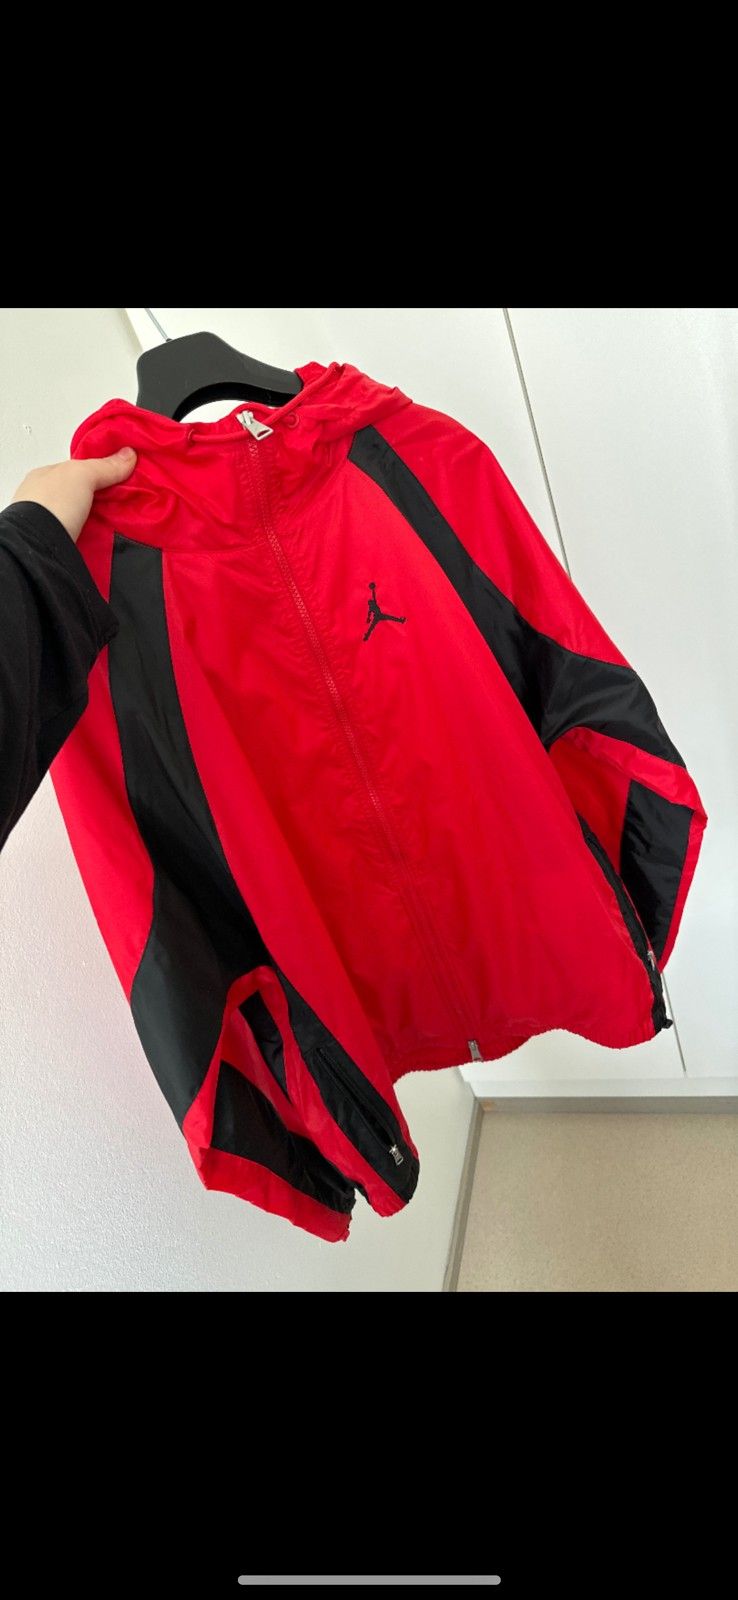 Jordan jacket